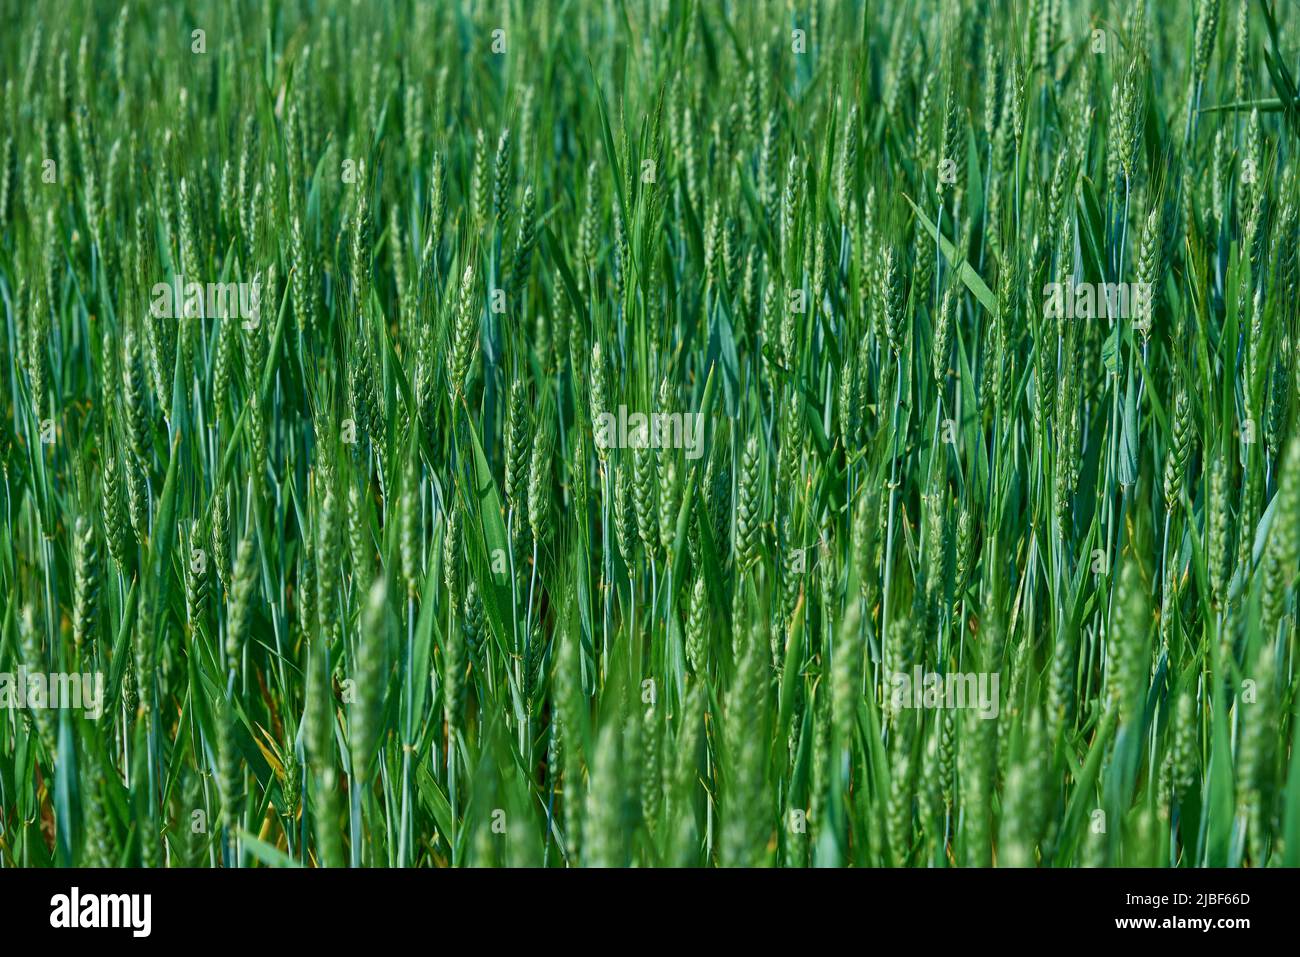 Nahrungsmittelkrise und Welthungerkonzept, grünes Feld mit Weizenohren, wachsende Weizensprossen aus der Nähe, Harwest-Problem Stockfoto